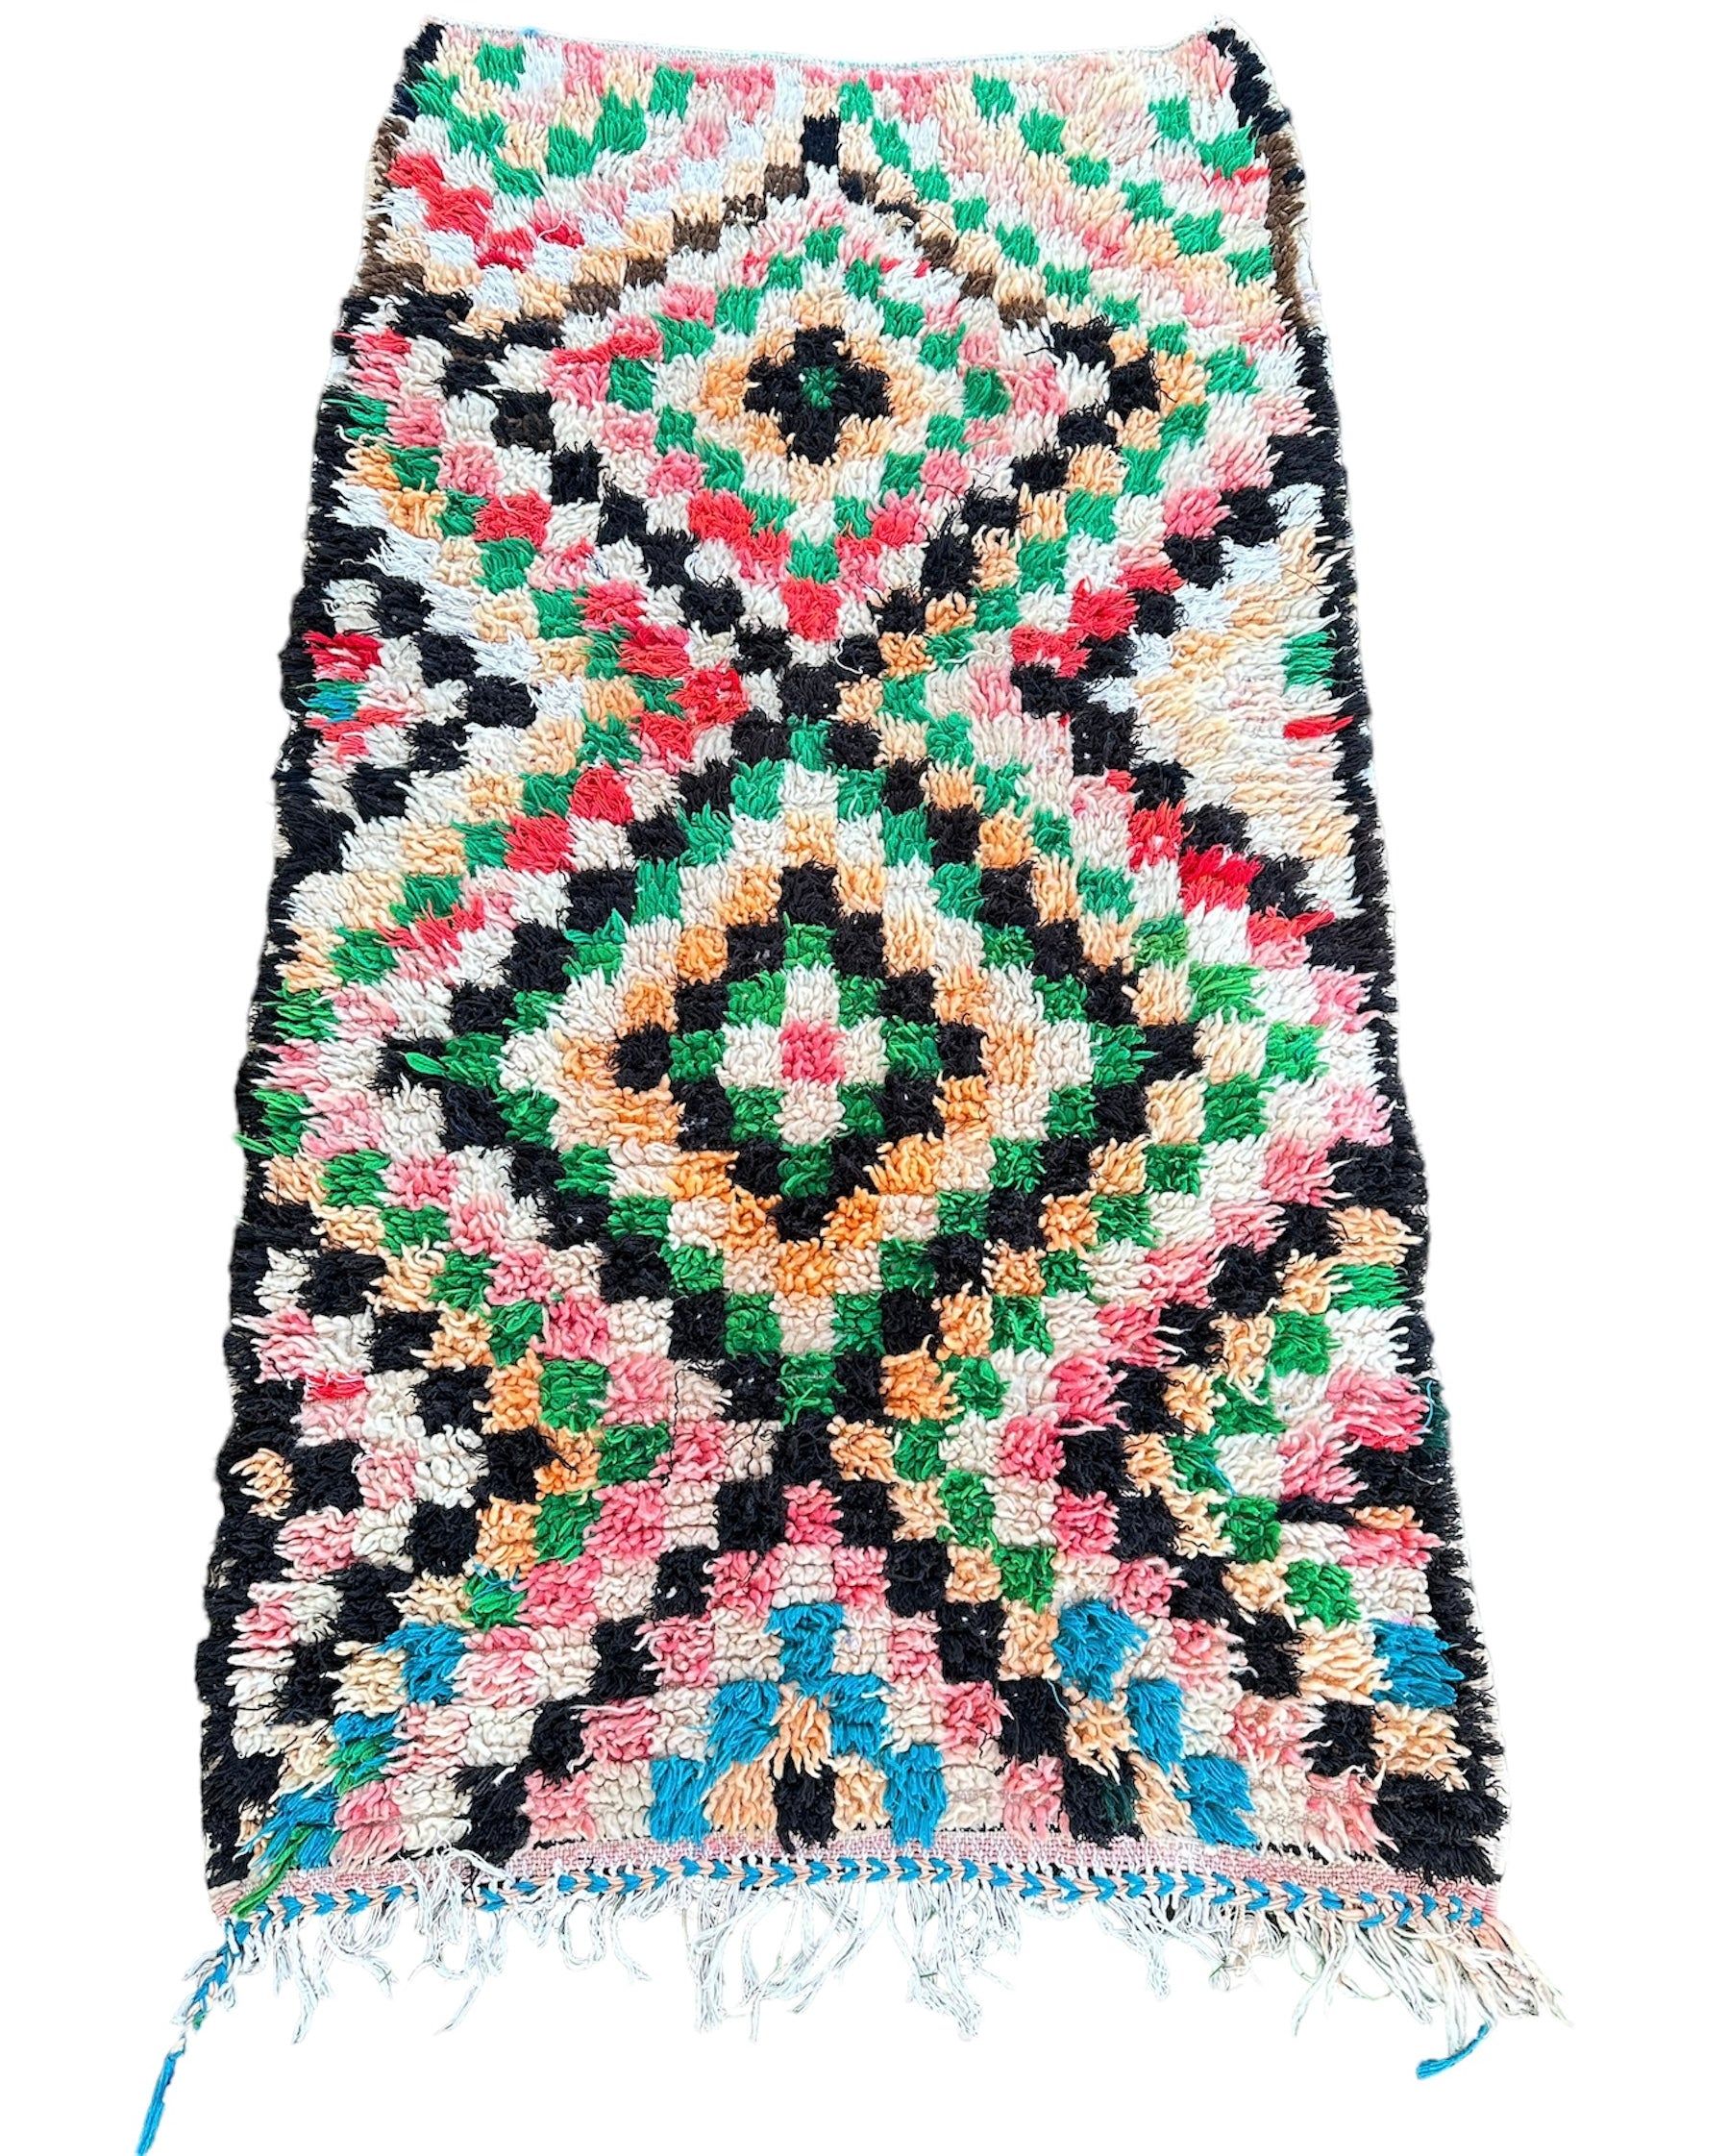 Boucherouite tæppe er en farverig firkanter og unik type